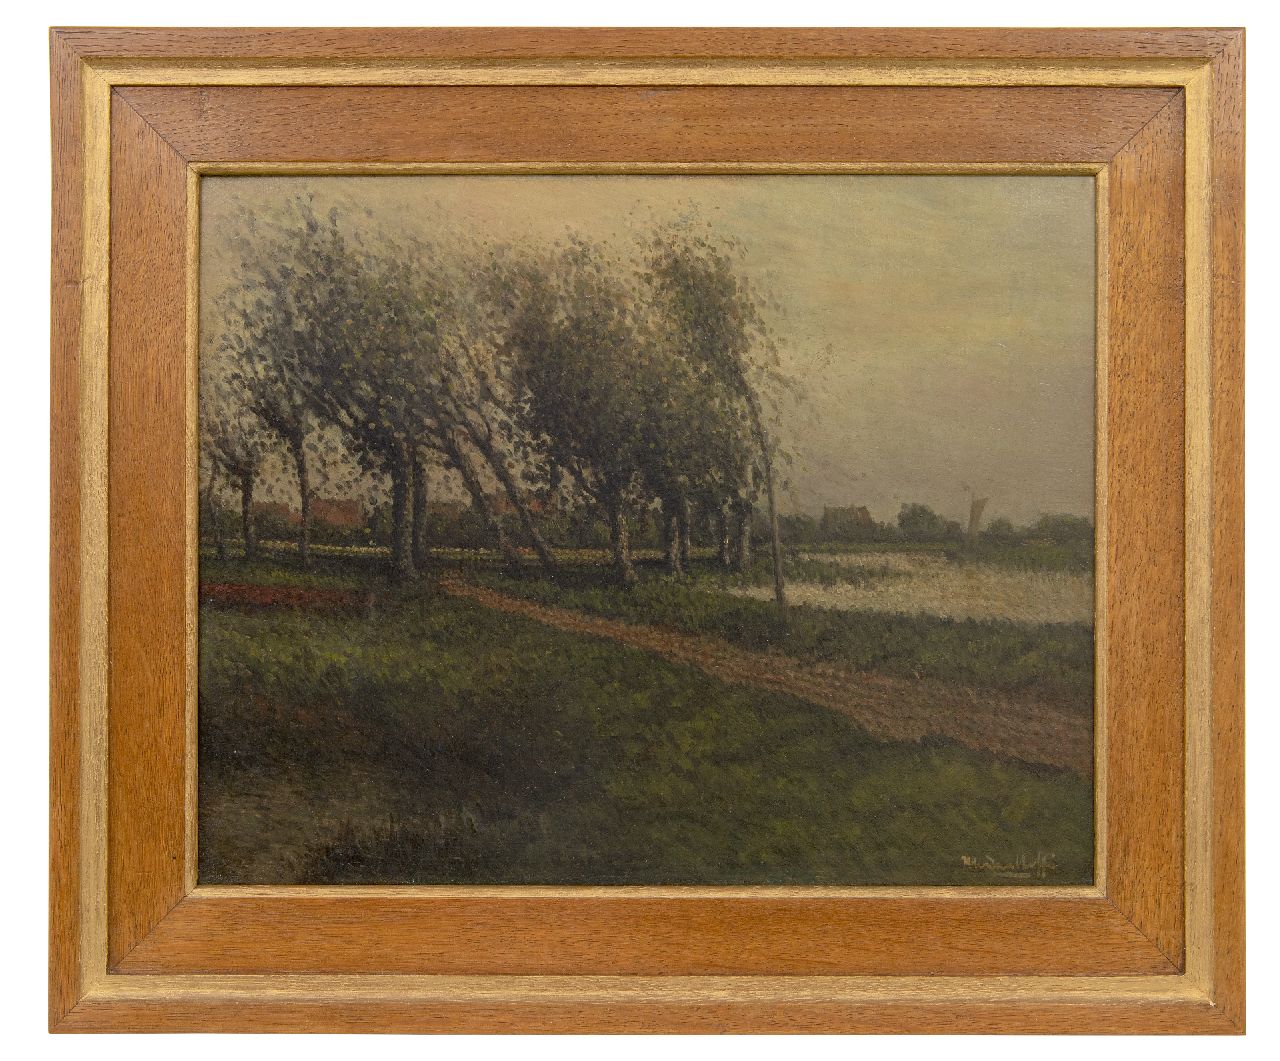 Daalhoff H.A. van | Hermanus Antonius 'Henri' van Daalhoff | Schilderijen te koop aangeboden | Pad langs de rivier, olieverf op paneel 32,0 x 40,4 cm, gesigneerd rechtsonder